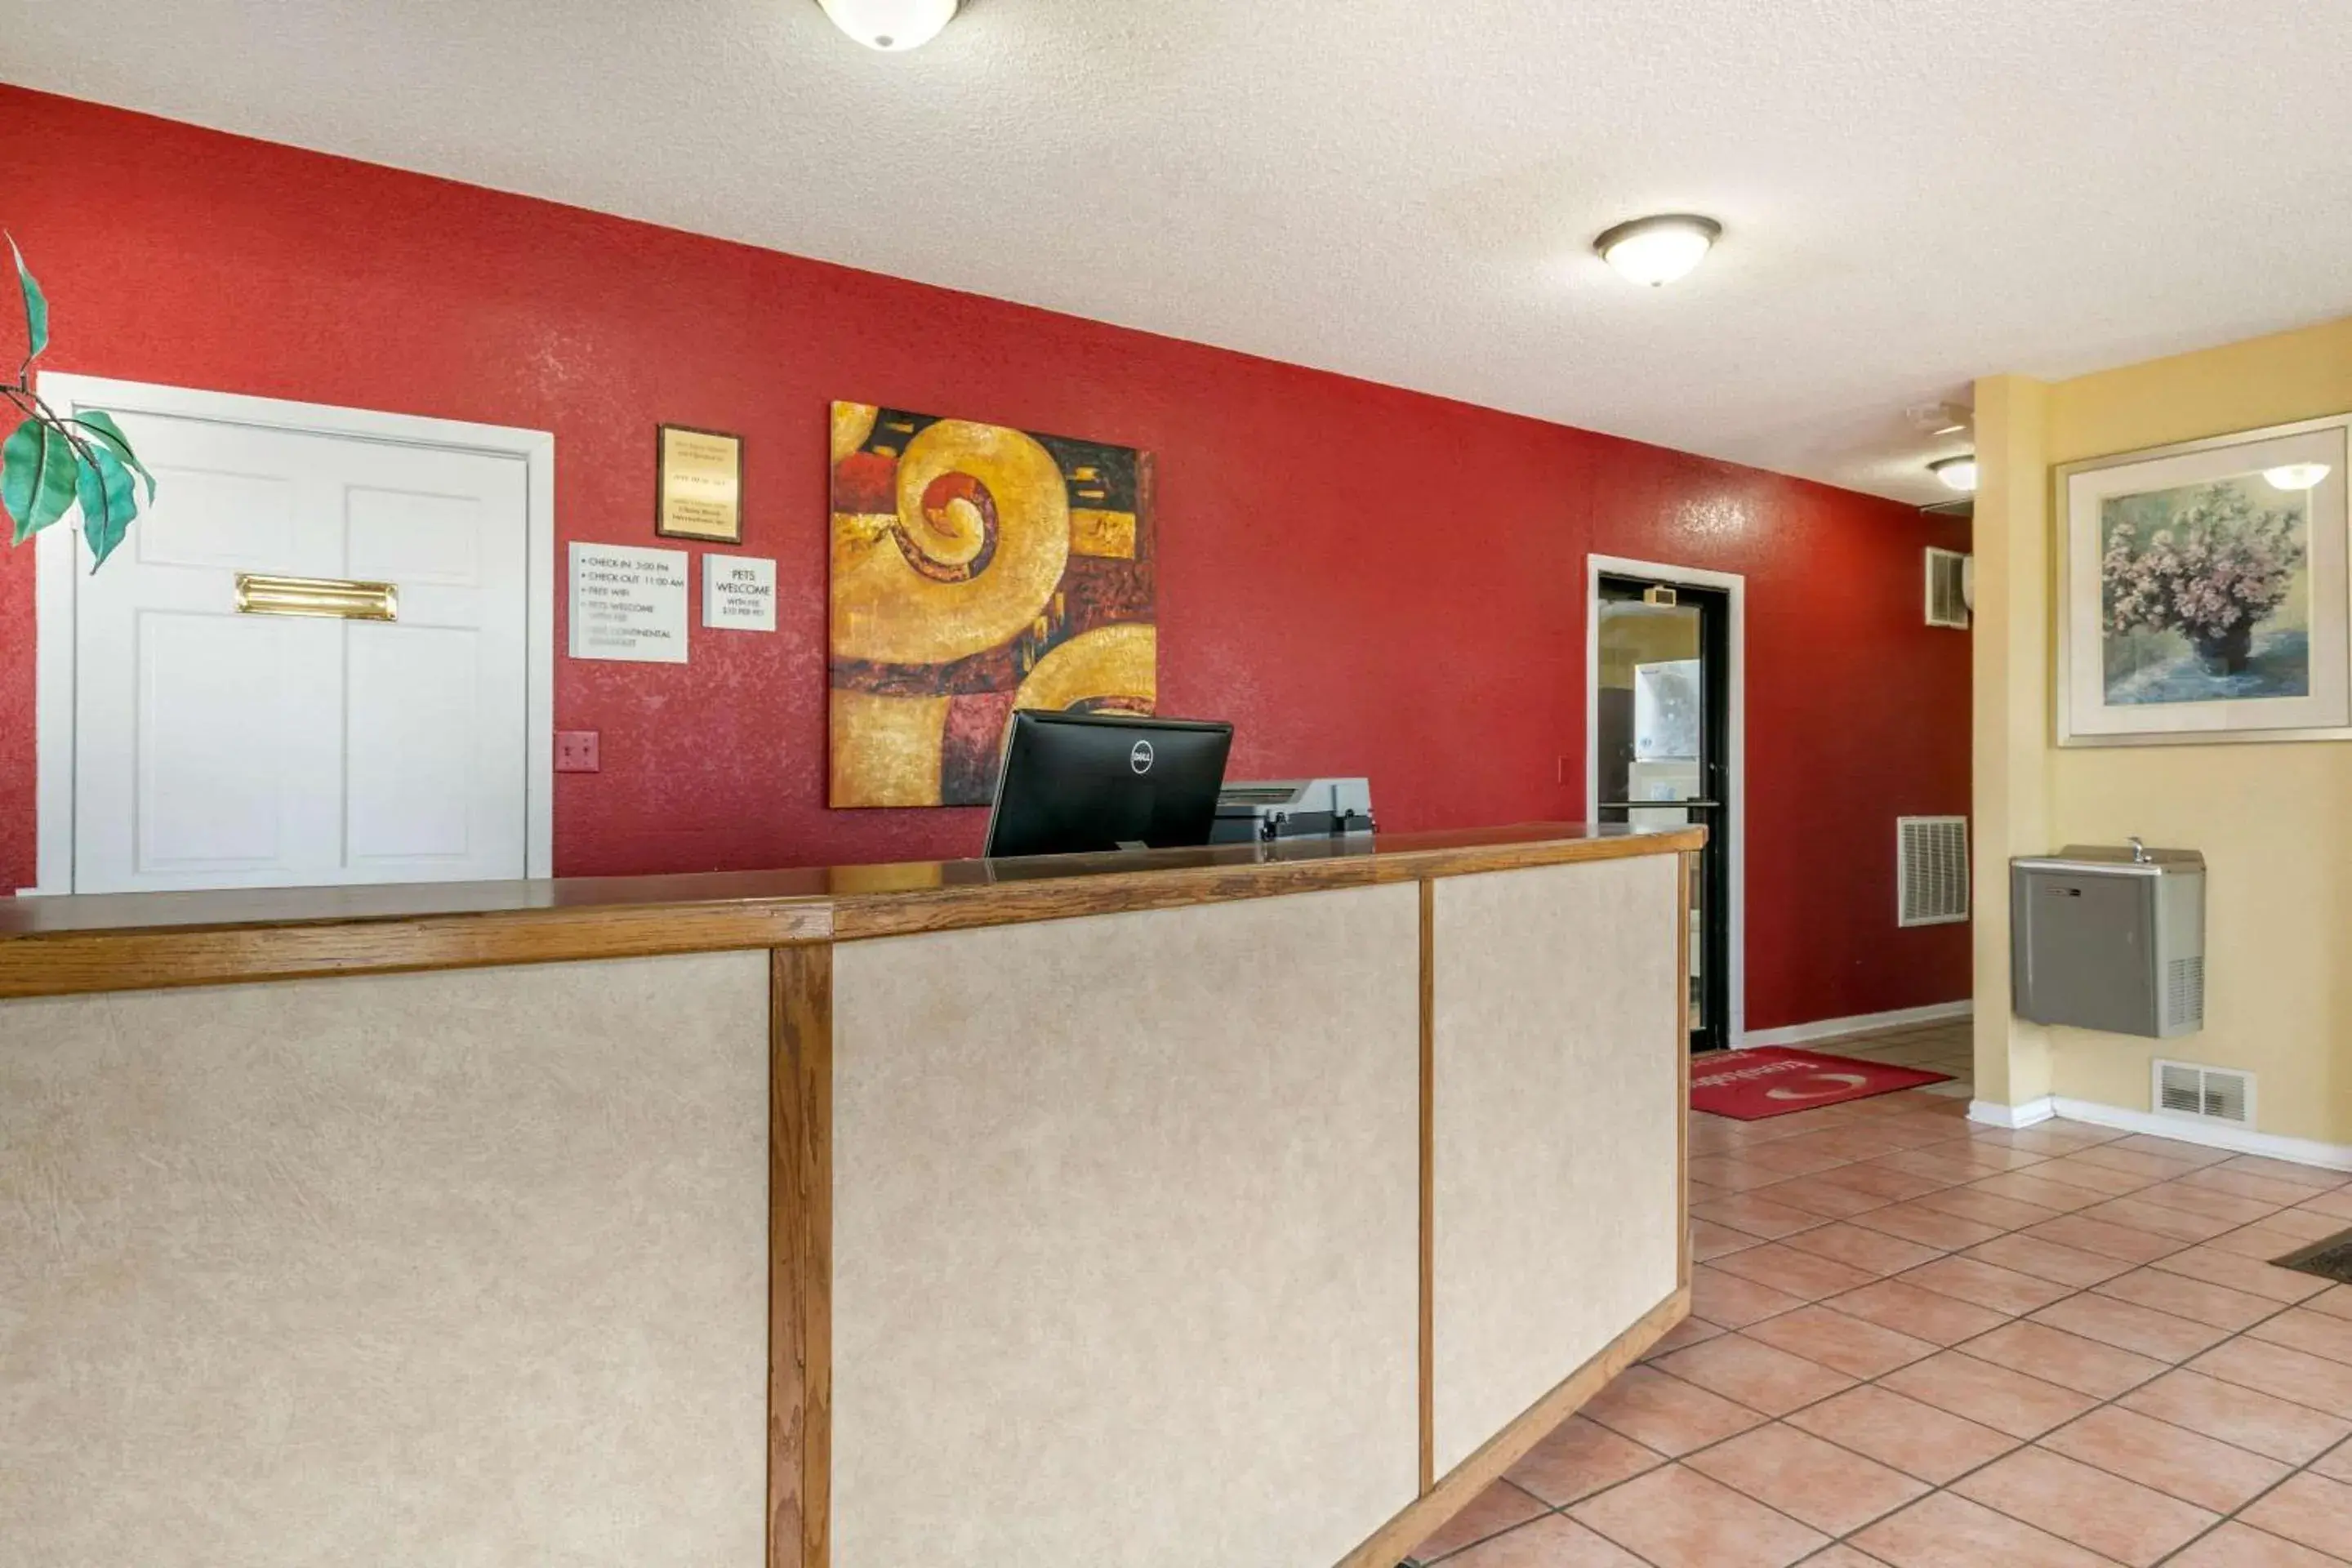 Lobby or reception, Lobby/Reception in Econo Lodge Jonesboro